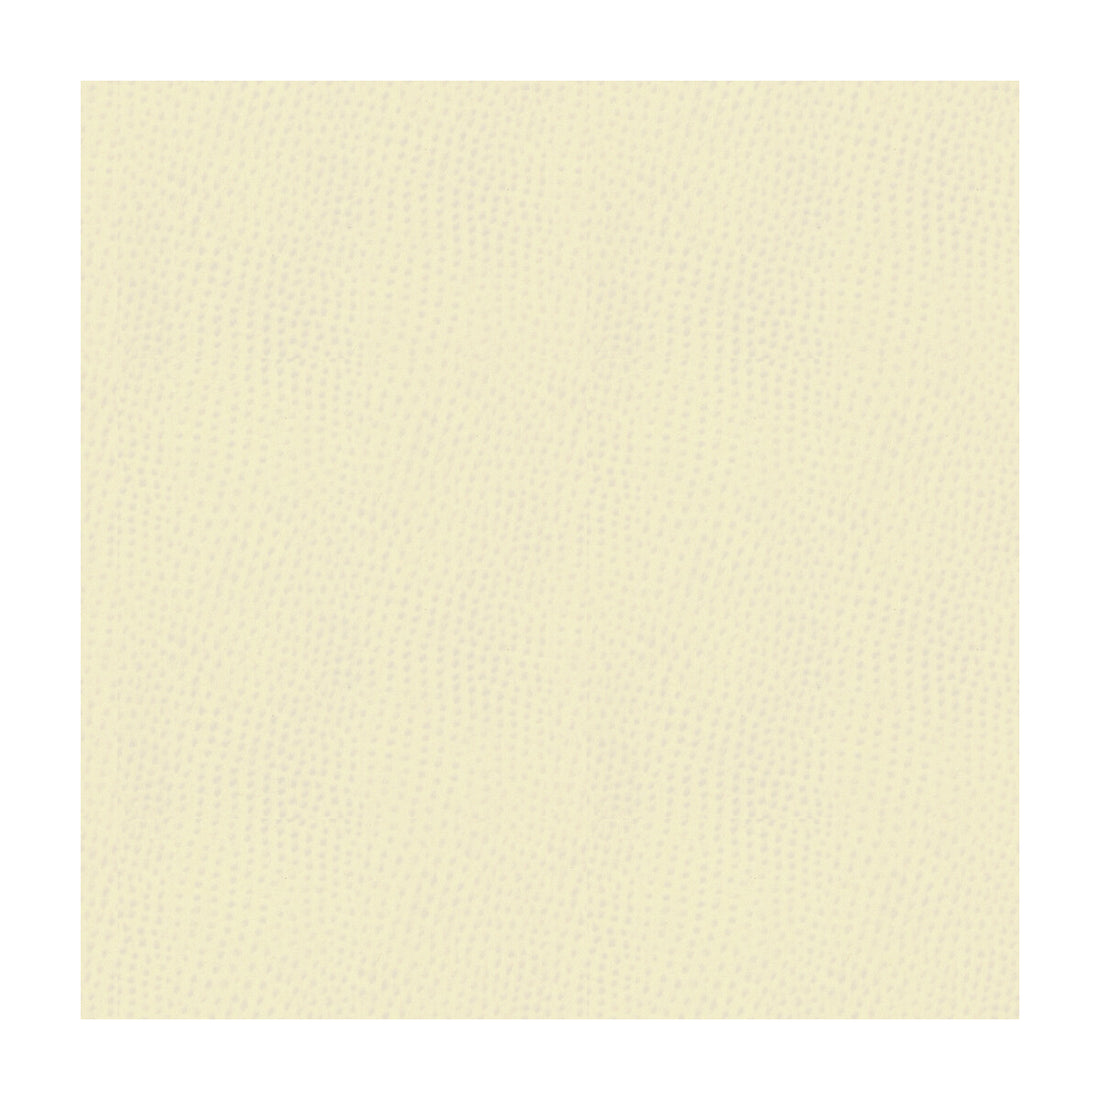 Kravet Smart fabric in ossy-1 color - pattern OSSY.1.0 - by Kravet Smart